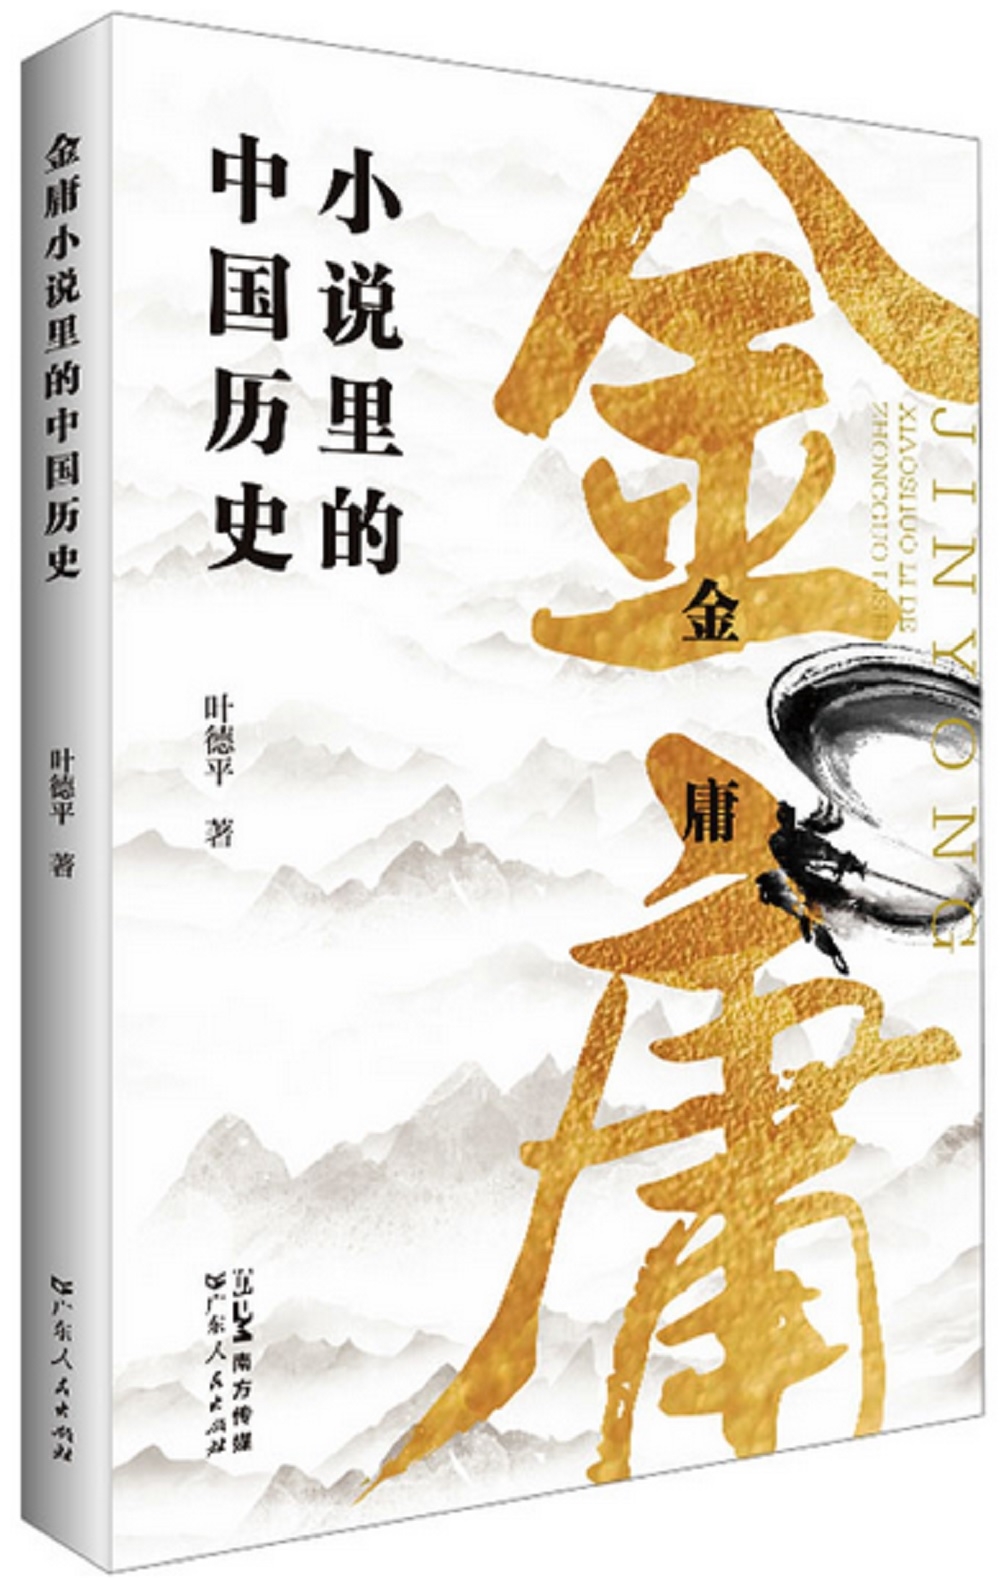 金庸小說里的中國歷史